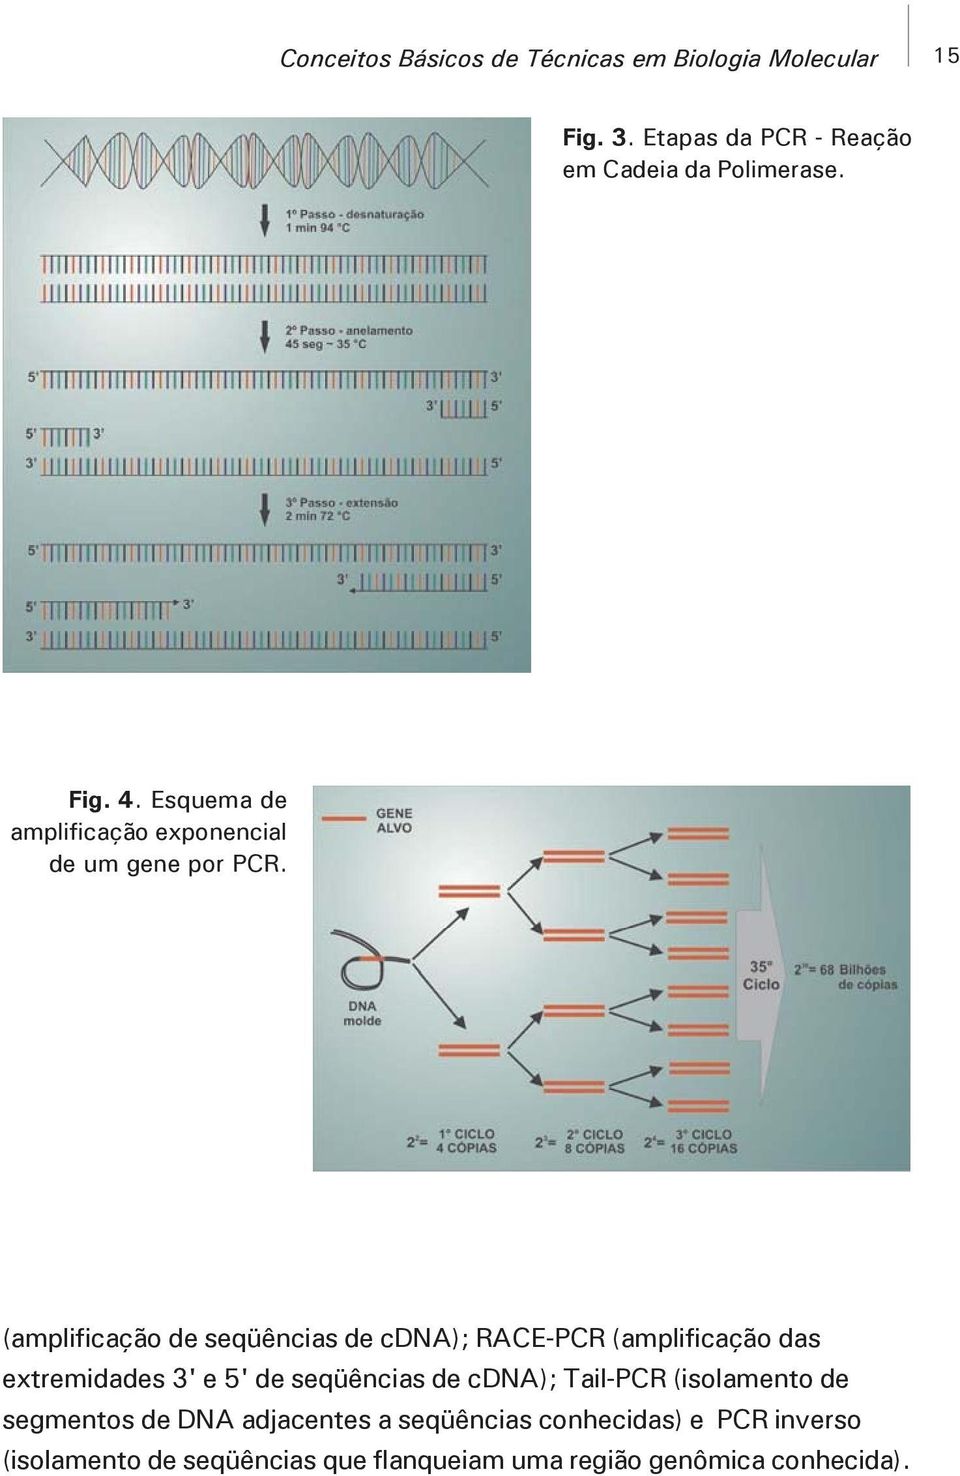 (amplificação de seqüências de cdna); RACE-PCR (amplificação das extremidades 3' e 5' de seqüências de cdna);